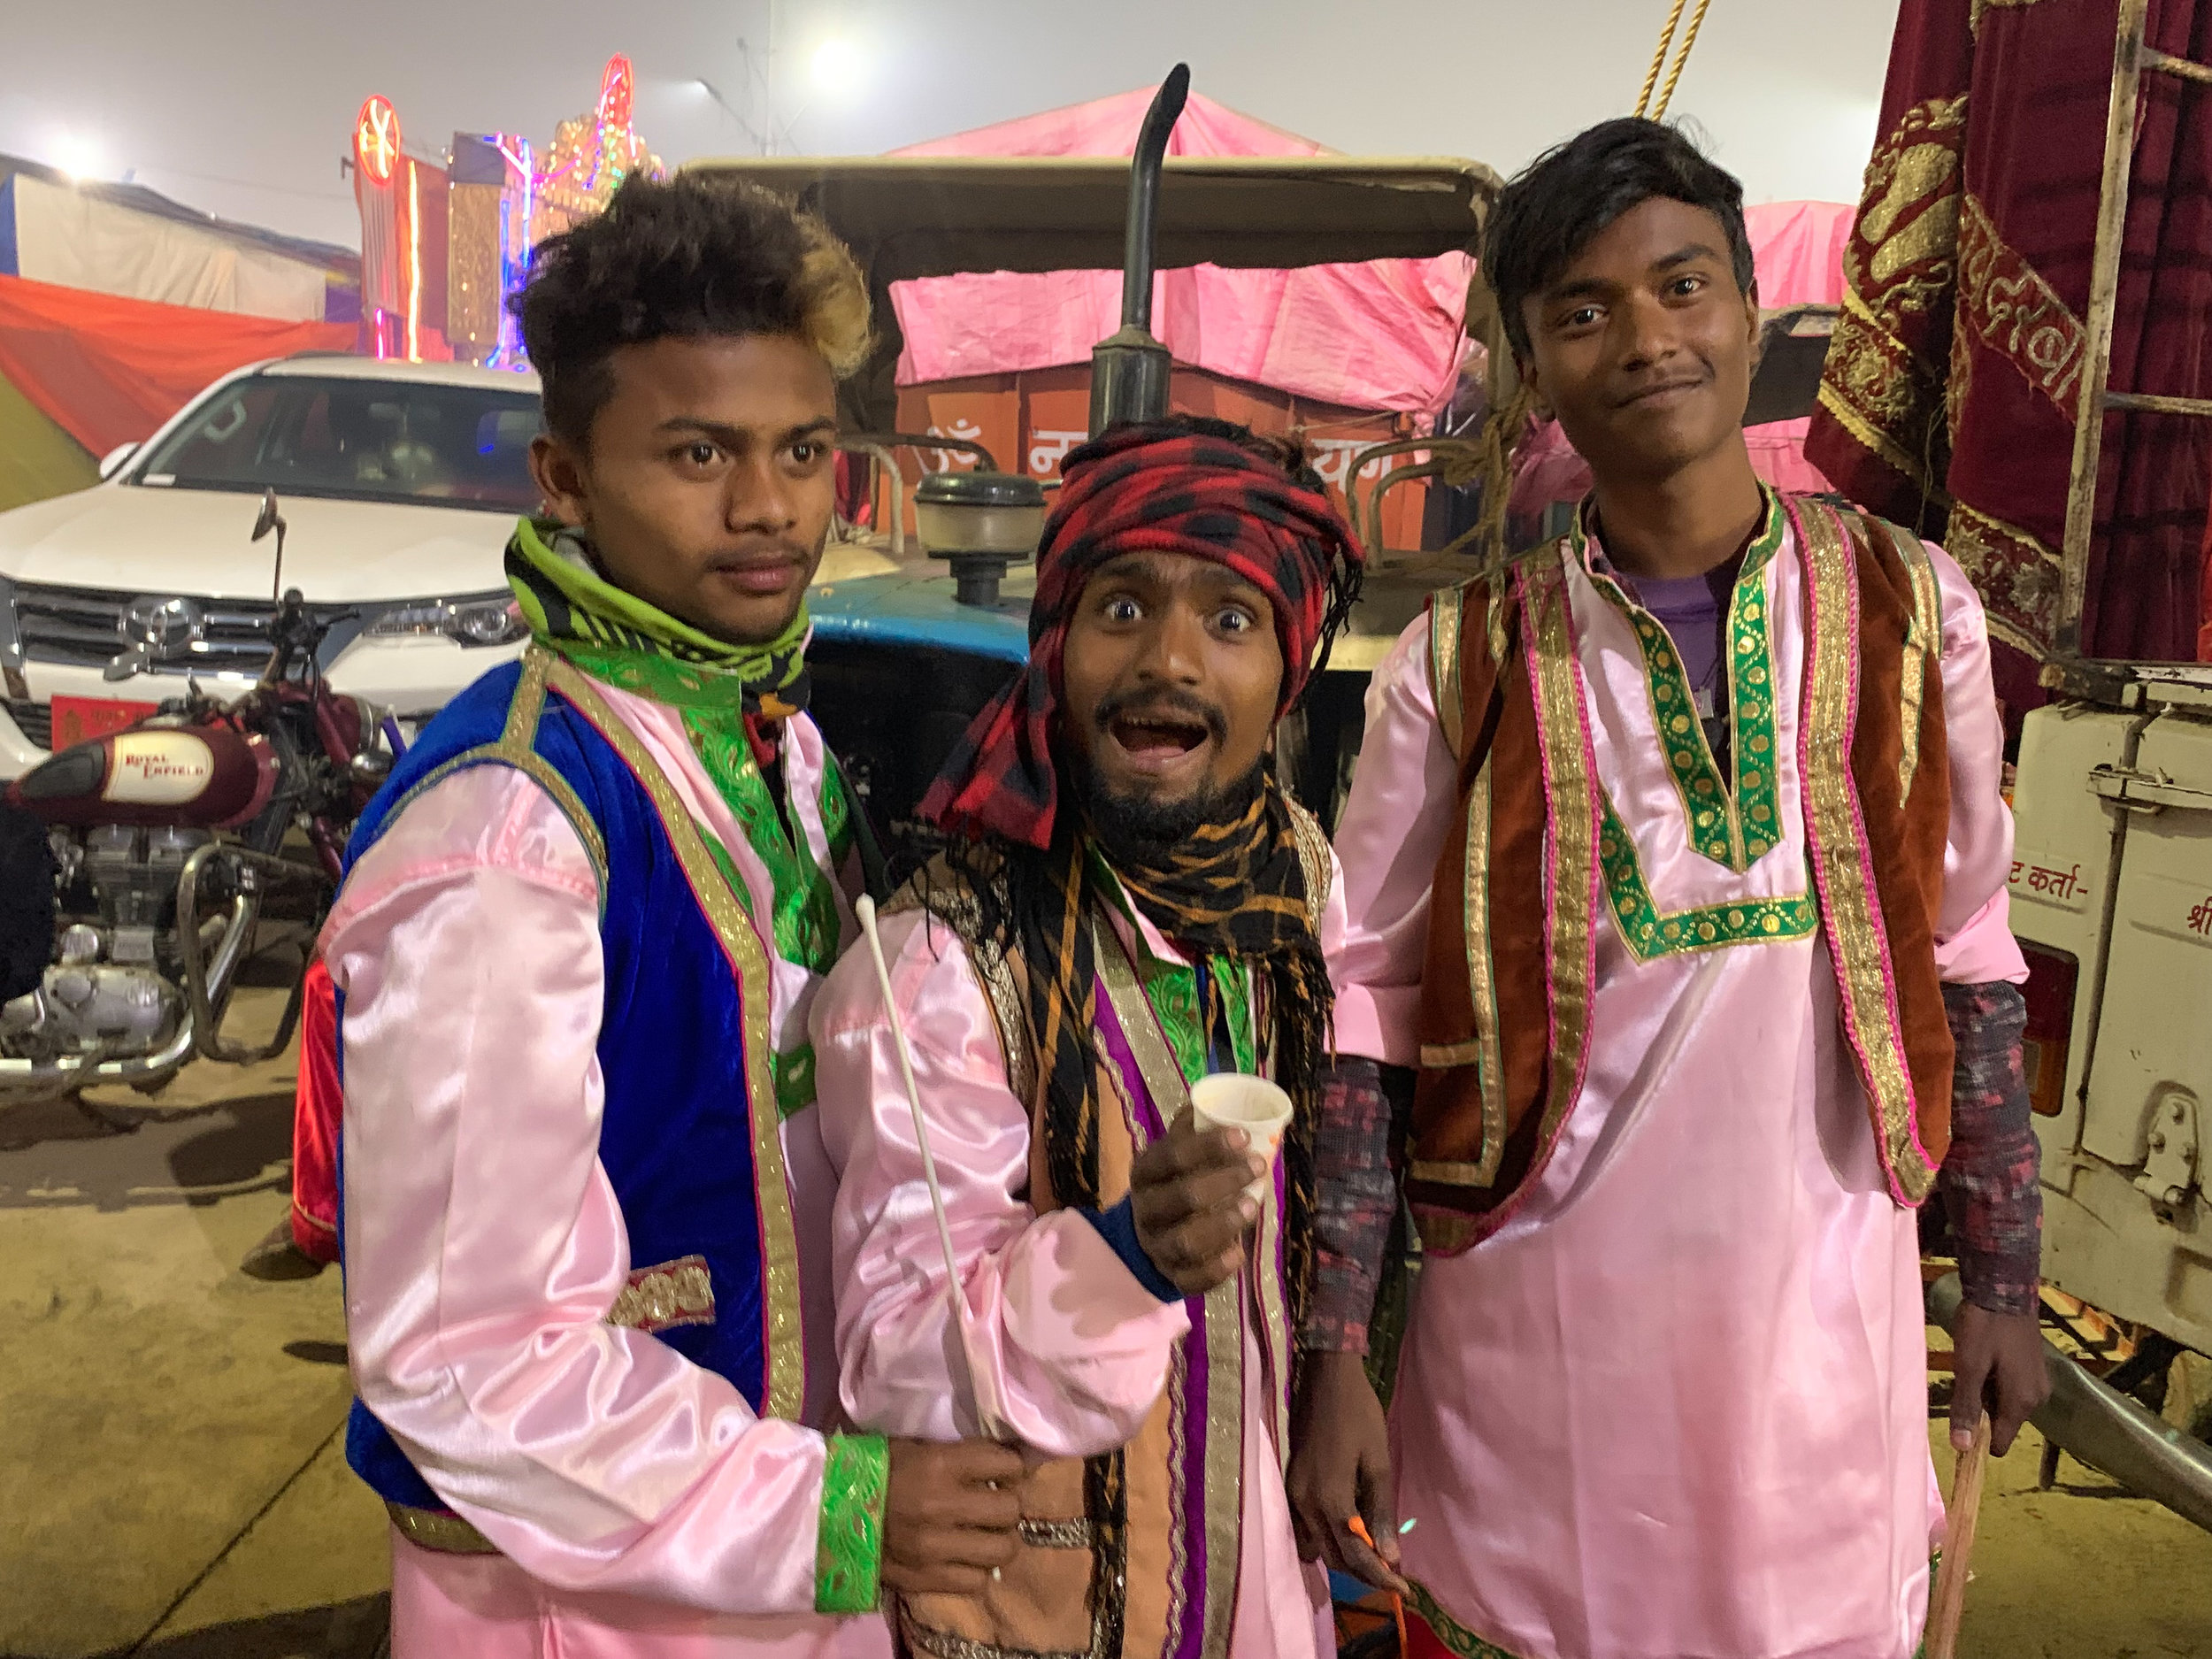 Pilgrims at Kumbh Mela, Prayagraj, India